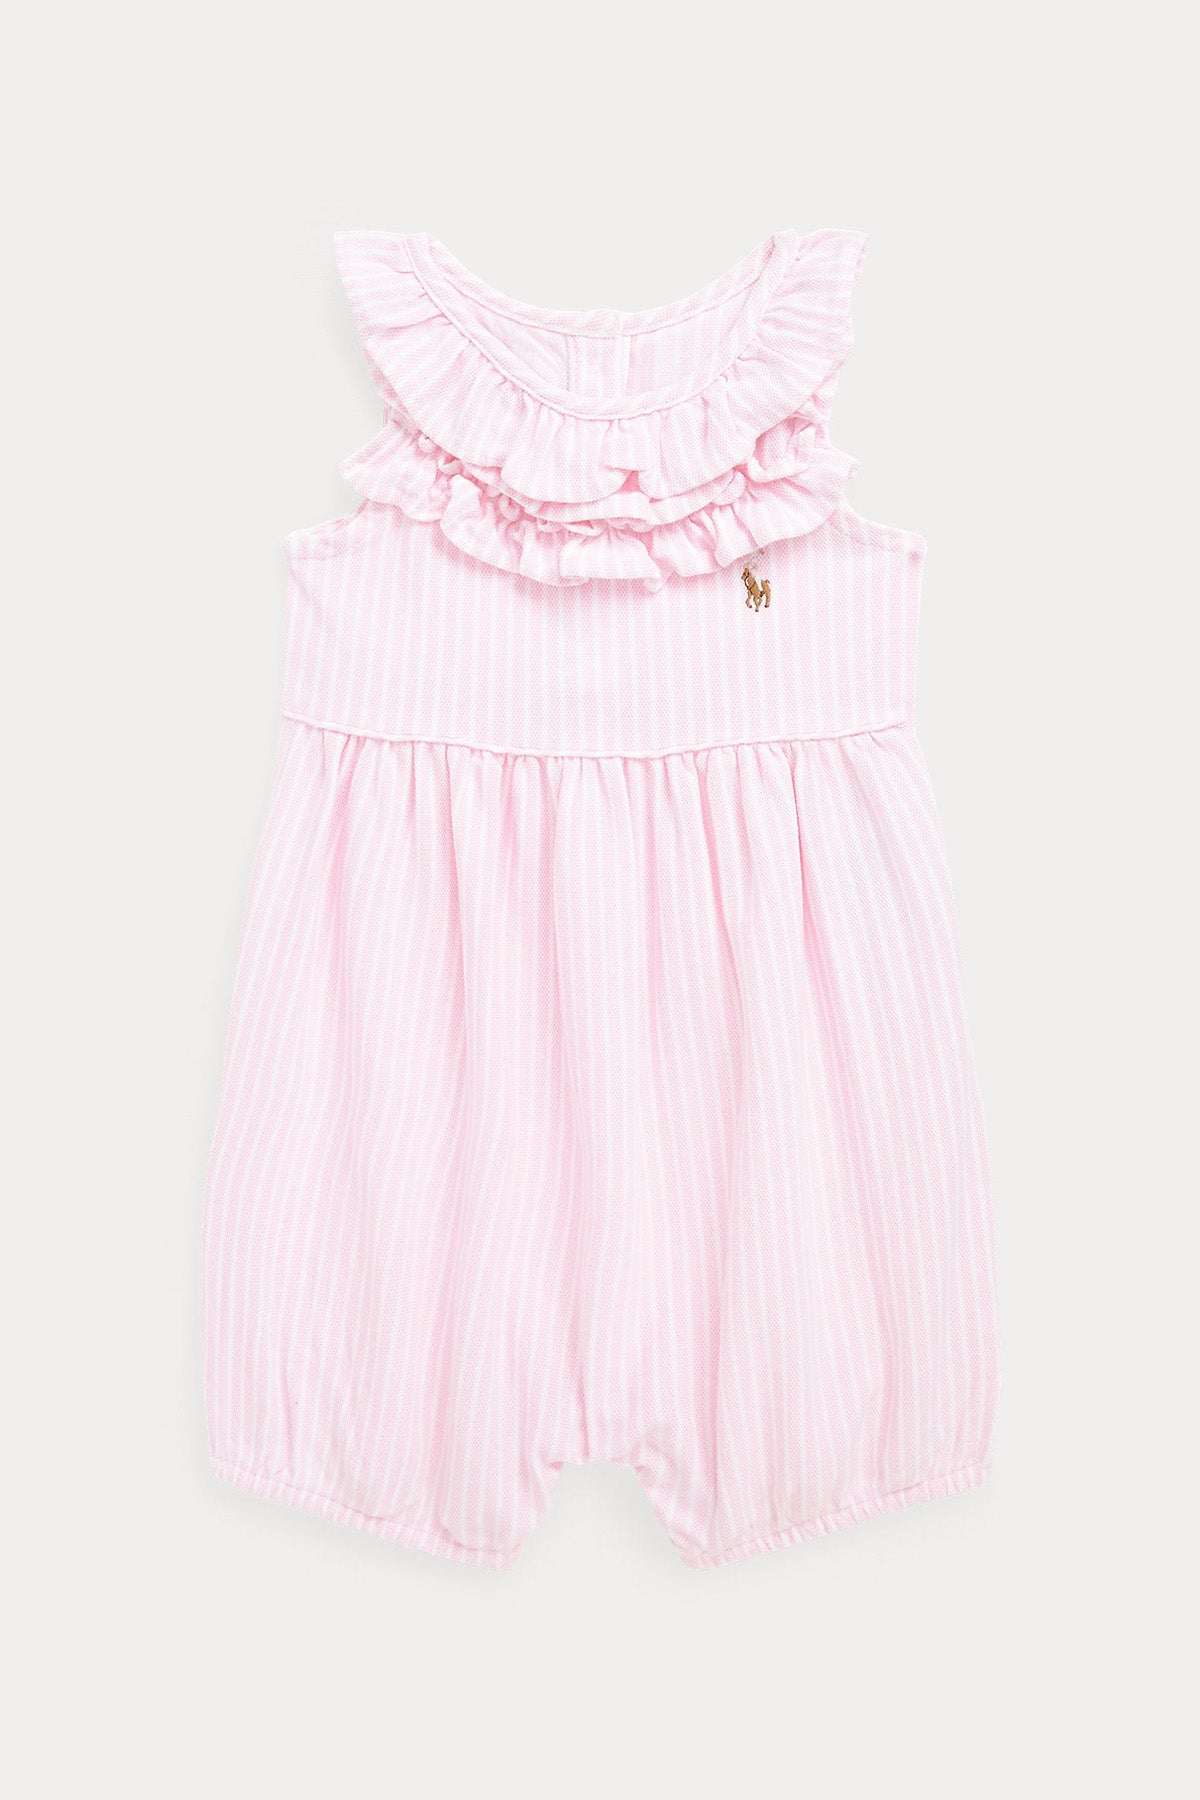 Polo Ralph Lauren Kids 3-9 Aylık Kız Bebek Çizgili Fırfırlı Tulum-Libas Trendy Fashion Store